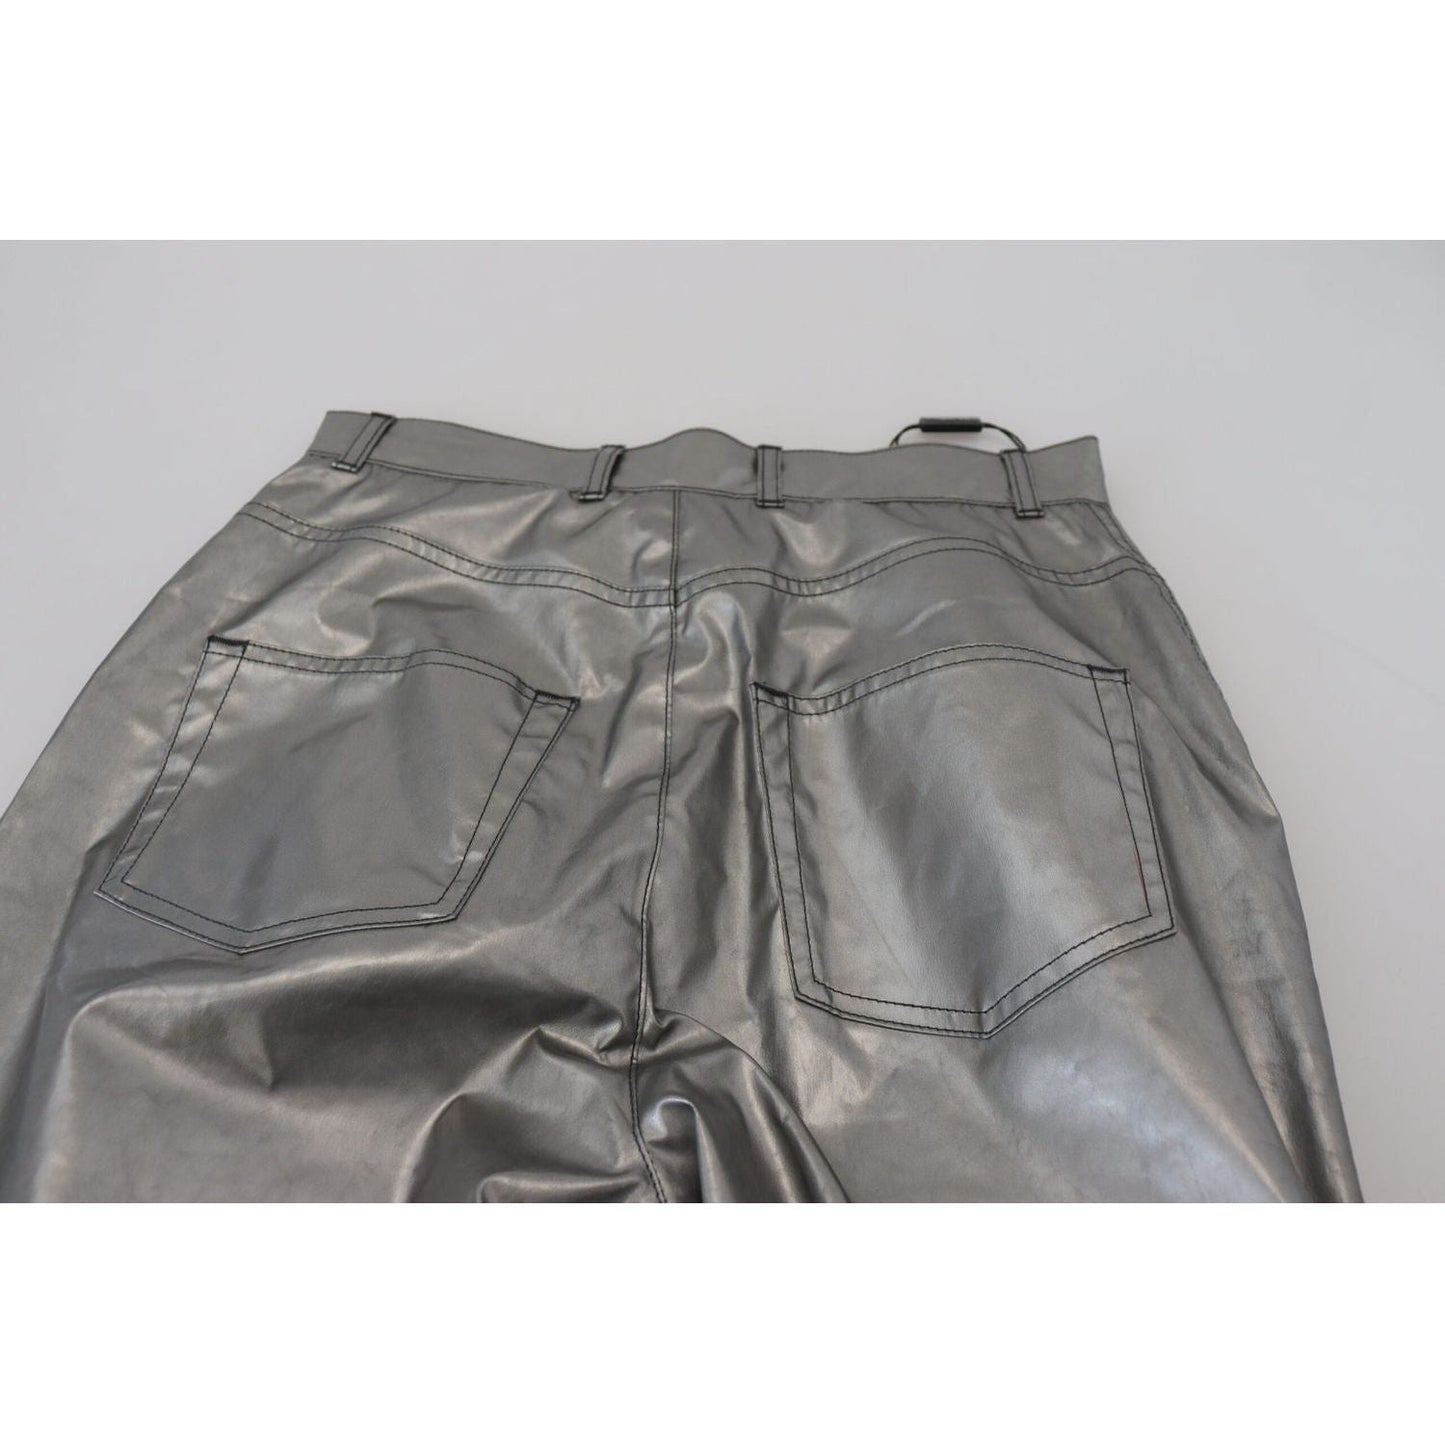 Dolce & Gabbana Elegant High Waist Skinny Pants in Silver metallic-silver-high-waist-skinny-pants IMG_2394-scaled-3d905cf3-411.jpg